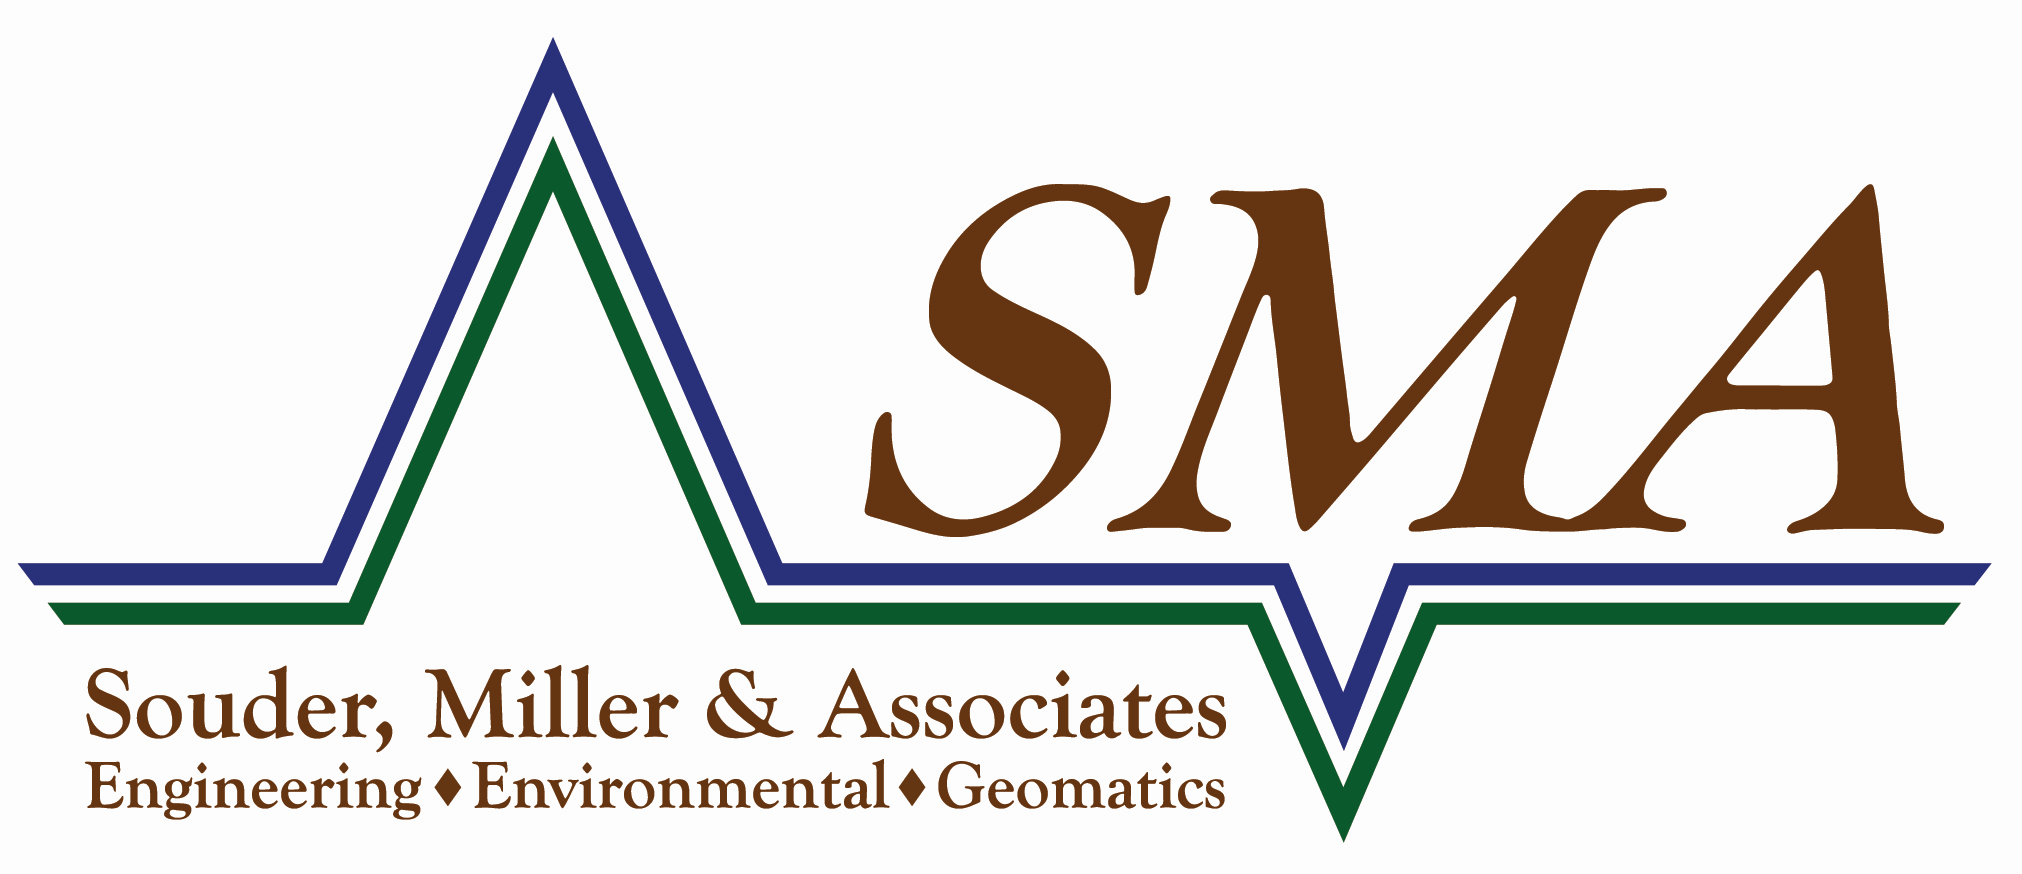 gold-souder-miller-sma-logo.png